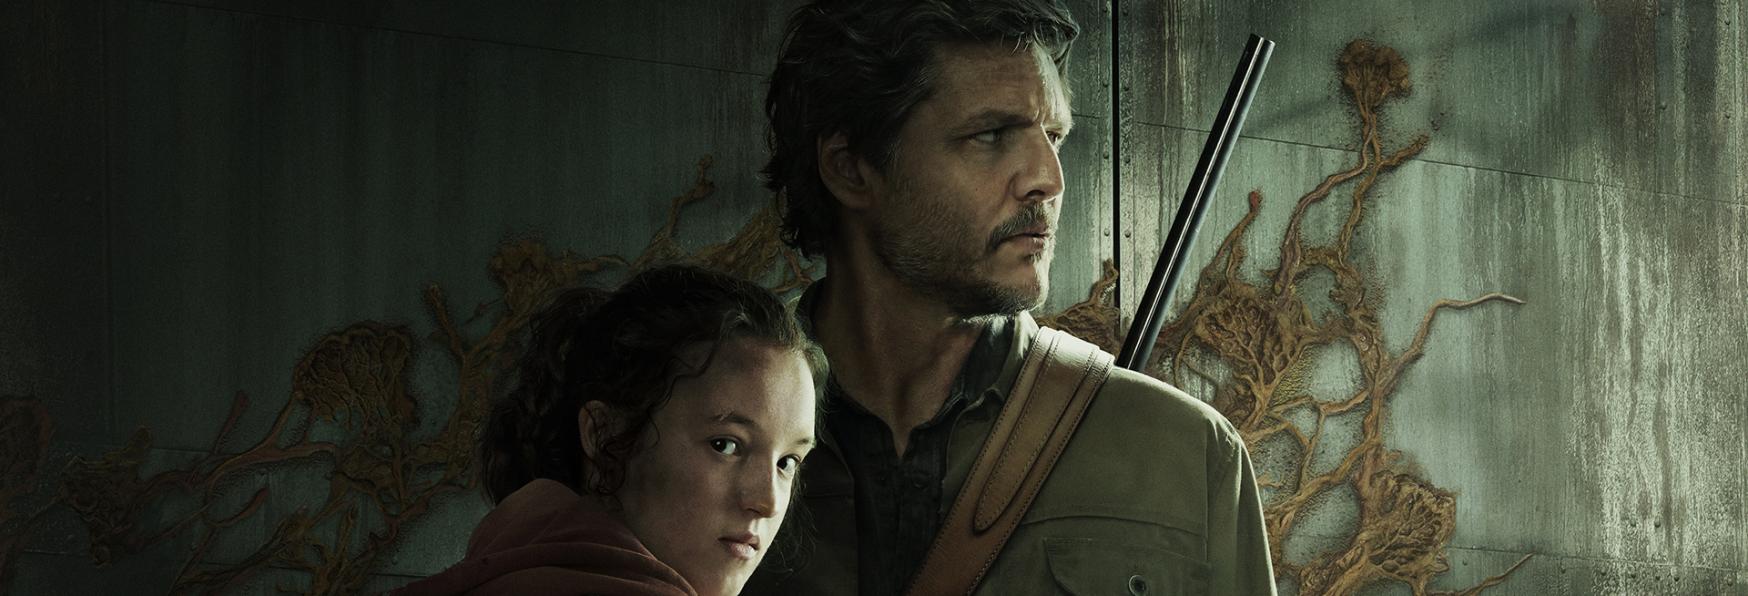 The Last of Us: Trama, Cast, Anticipazioni, Trailer e Data di Uscita della Nuova Serie TV di HBO